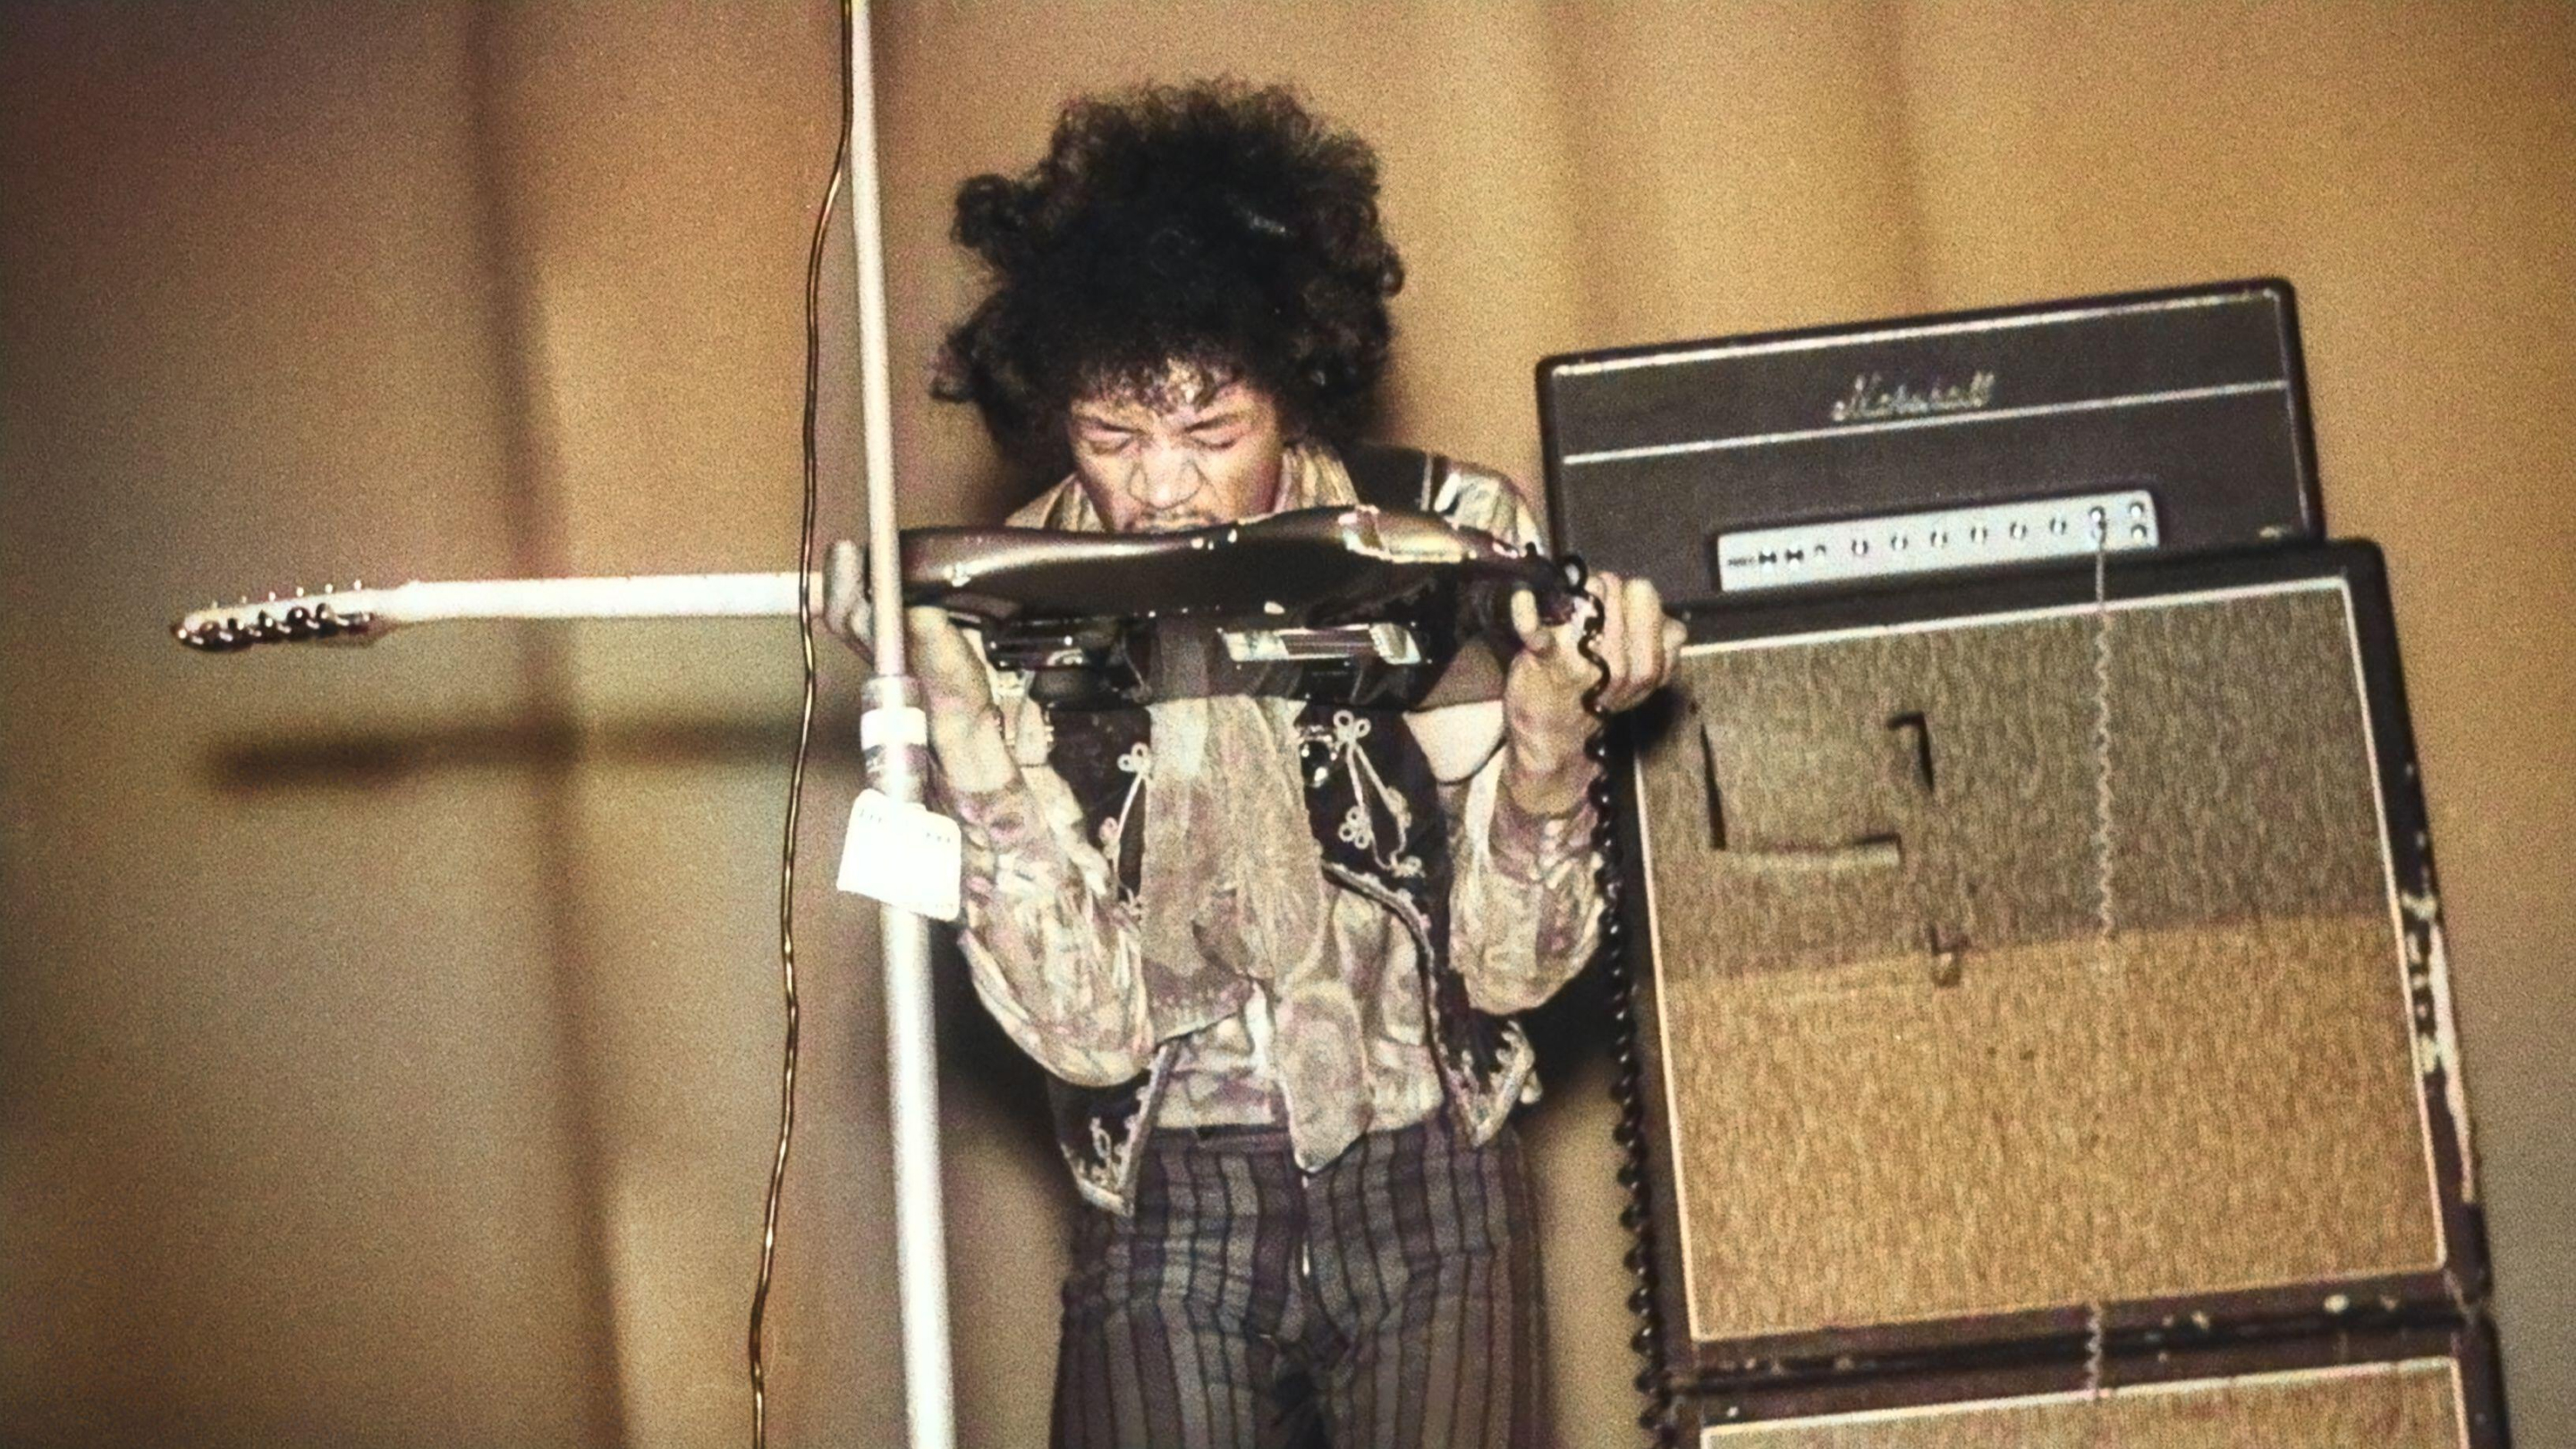 Jimi Hendrix spielt Gitarre mit seinem Mund